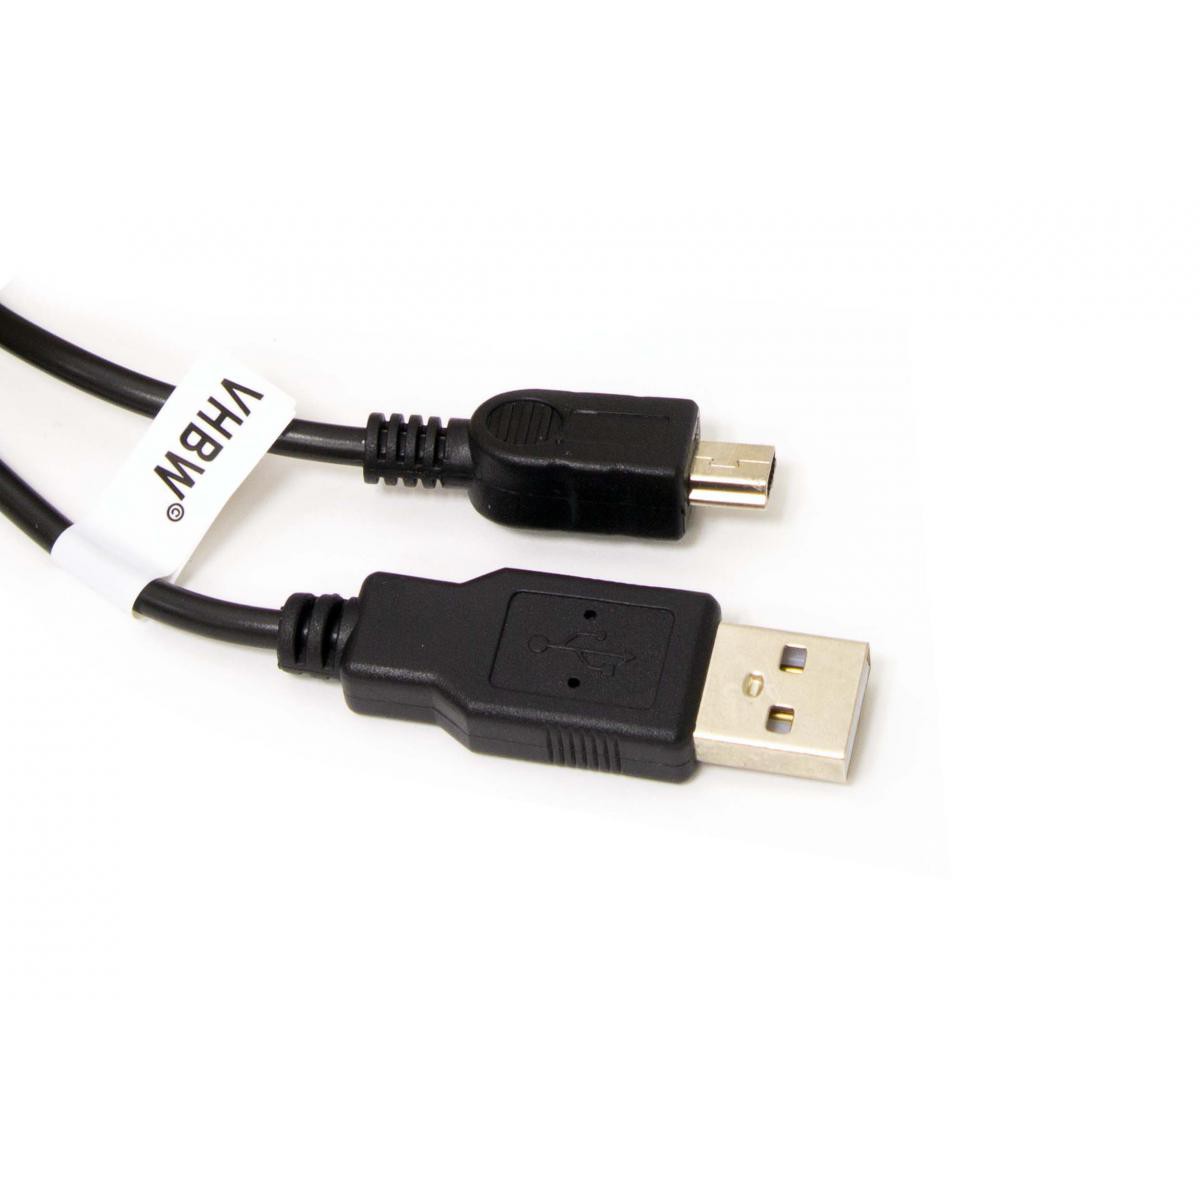 Vhbw - Câble USB A-Mini-B 5 pôles noir/black, longueur 1m, pour OLYMPUS VG-110, VG110, remplace Aiptek, BlackBerry, Canon IFC-500U etc. - Câble antenne